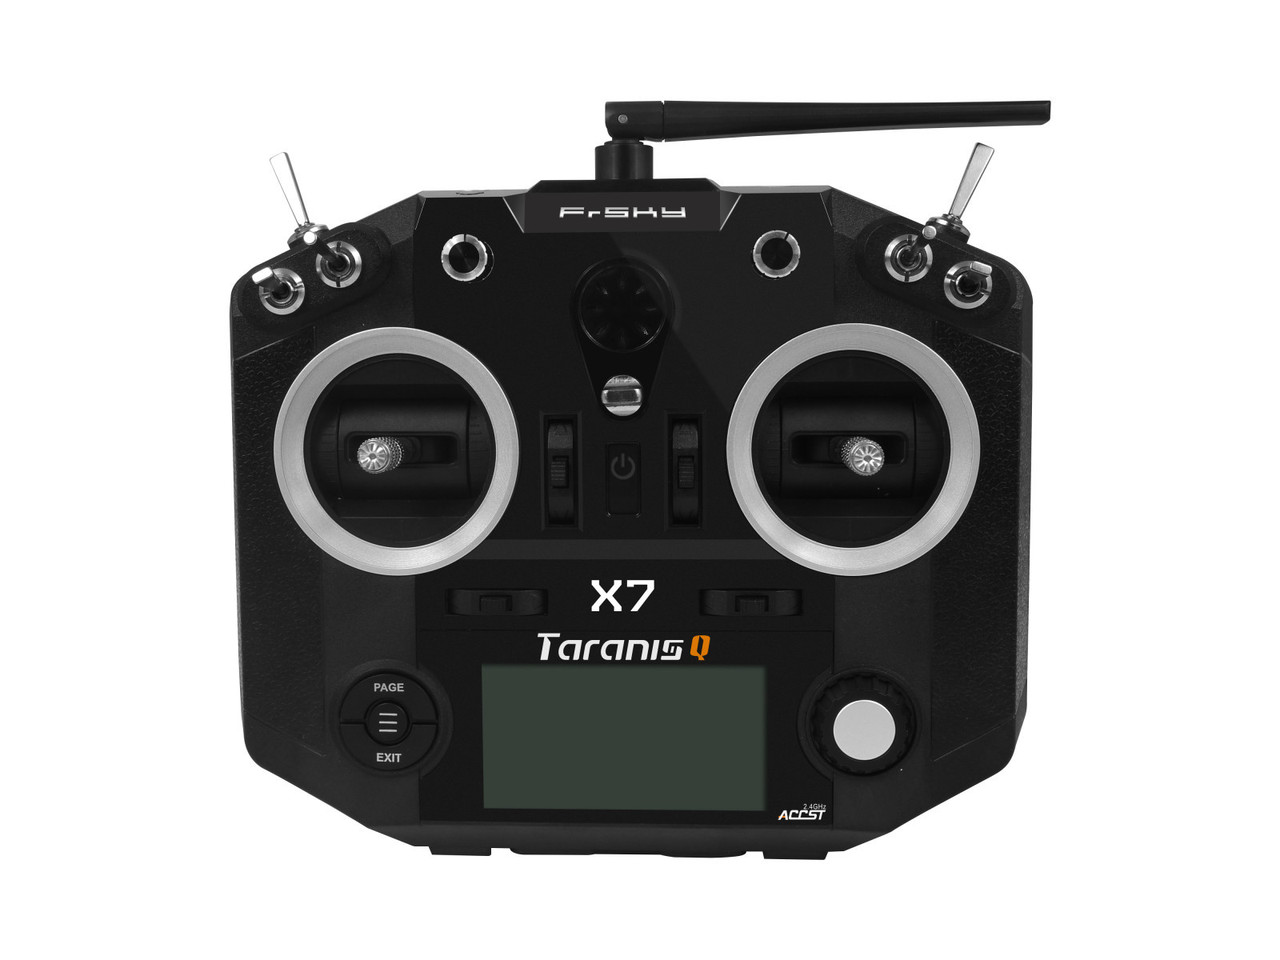 Апаратура керування FrSky Taranis Q X7 ACCESS пульт із сумкою для авіамоделей (чорний)